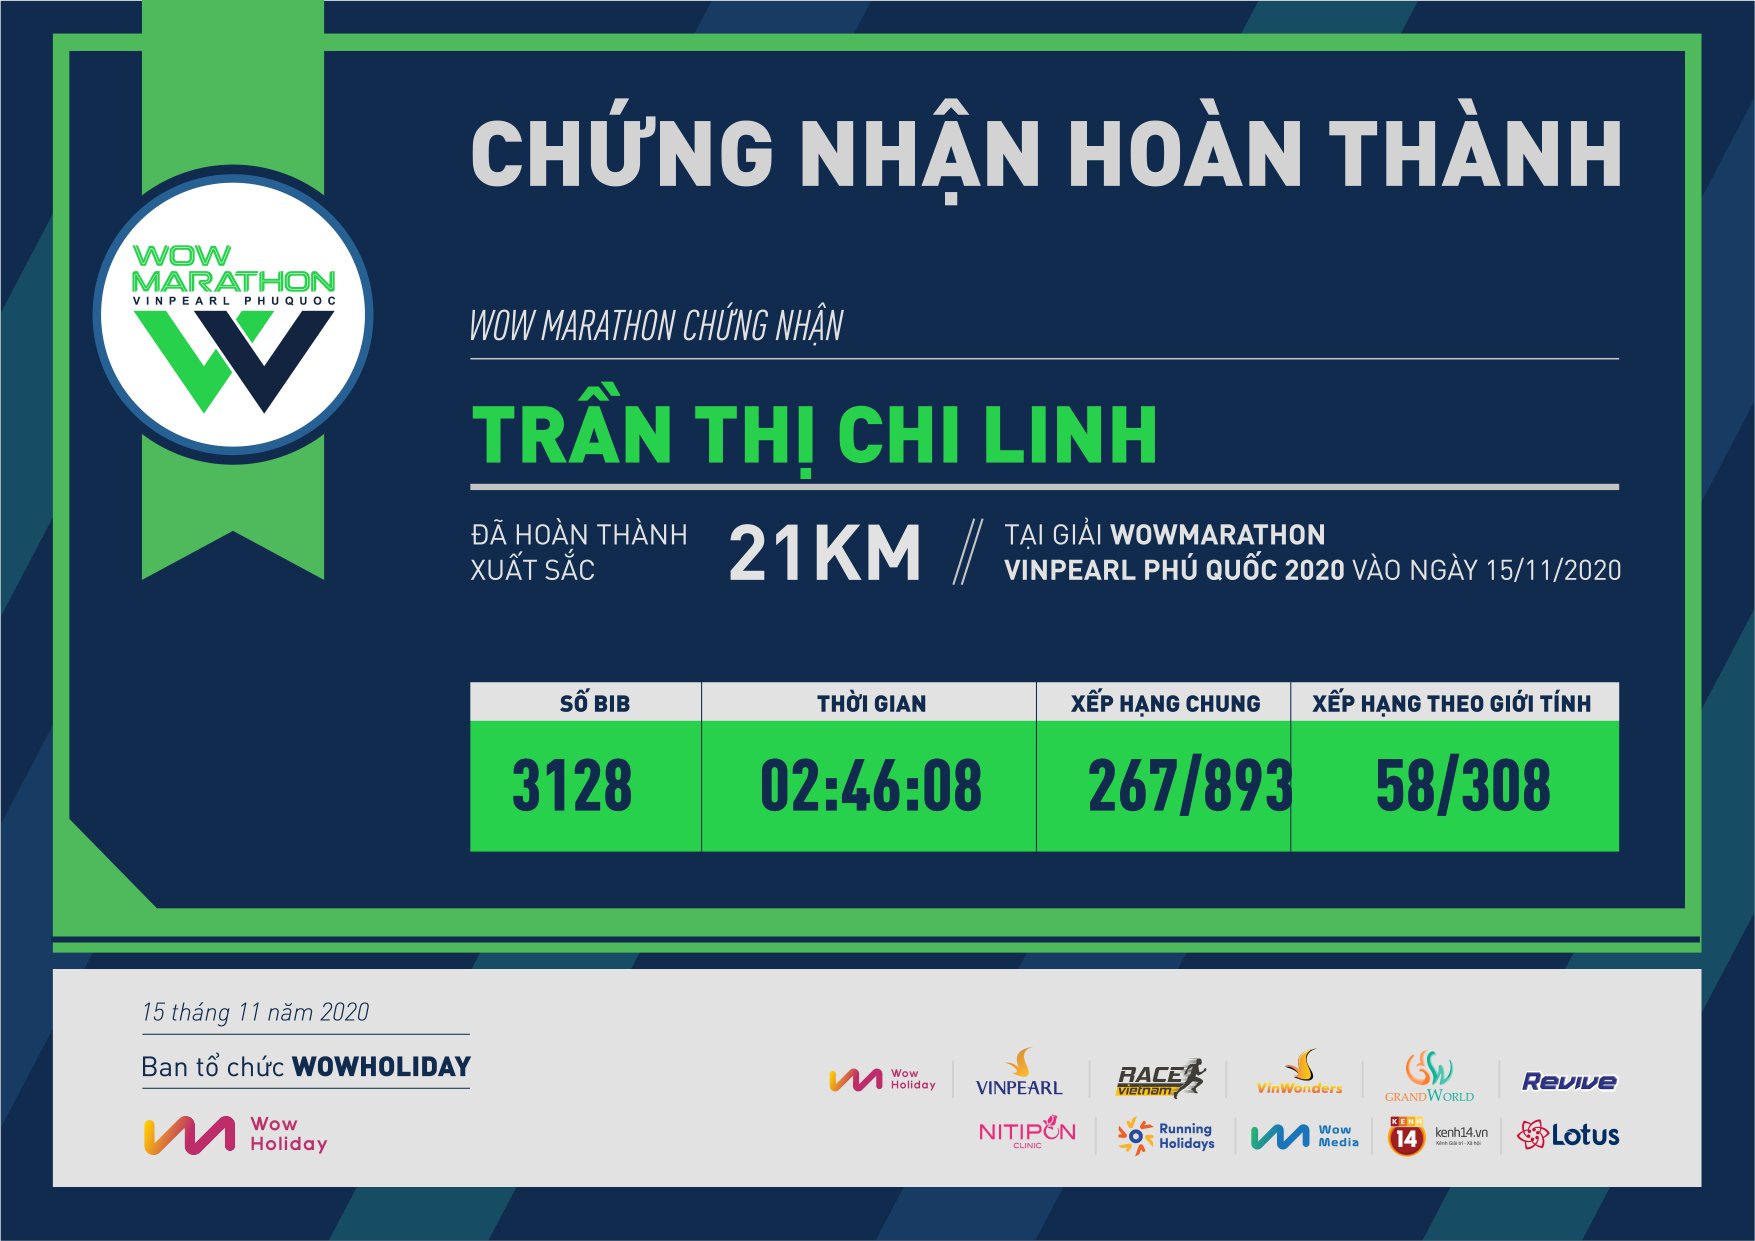 3128 - Trần Thị Chi Linh